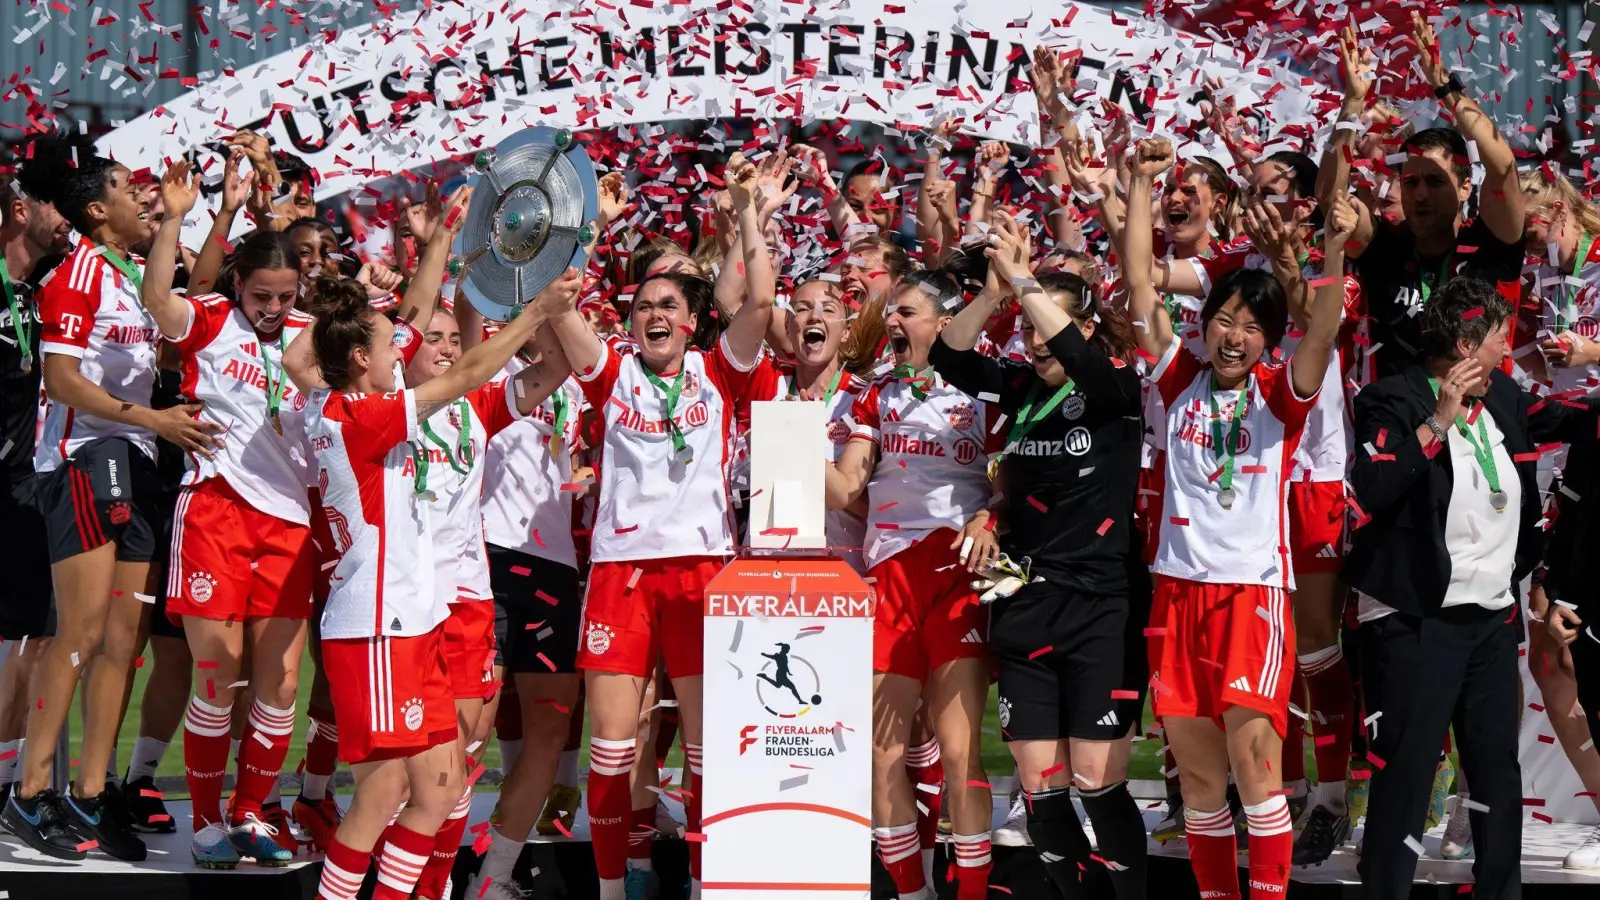 Bejubeln nach ihrem 11:1-Triumph am letzten Spieltag die Meisterschaft: die Frauen des FC Bayern München. (Foto: Sven Hoppe/dpa)